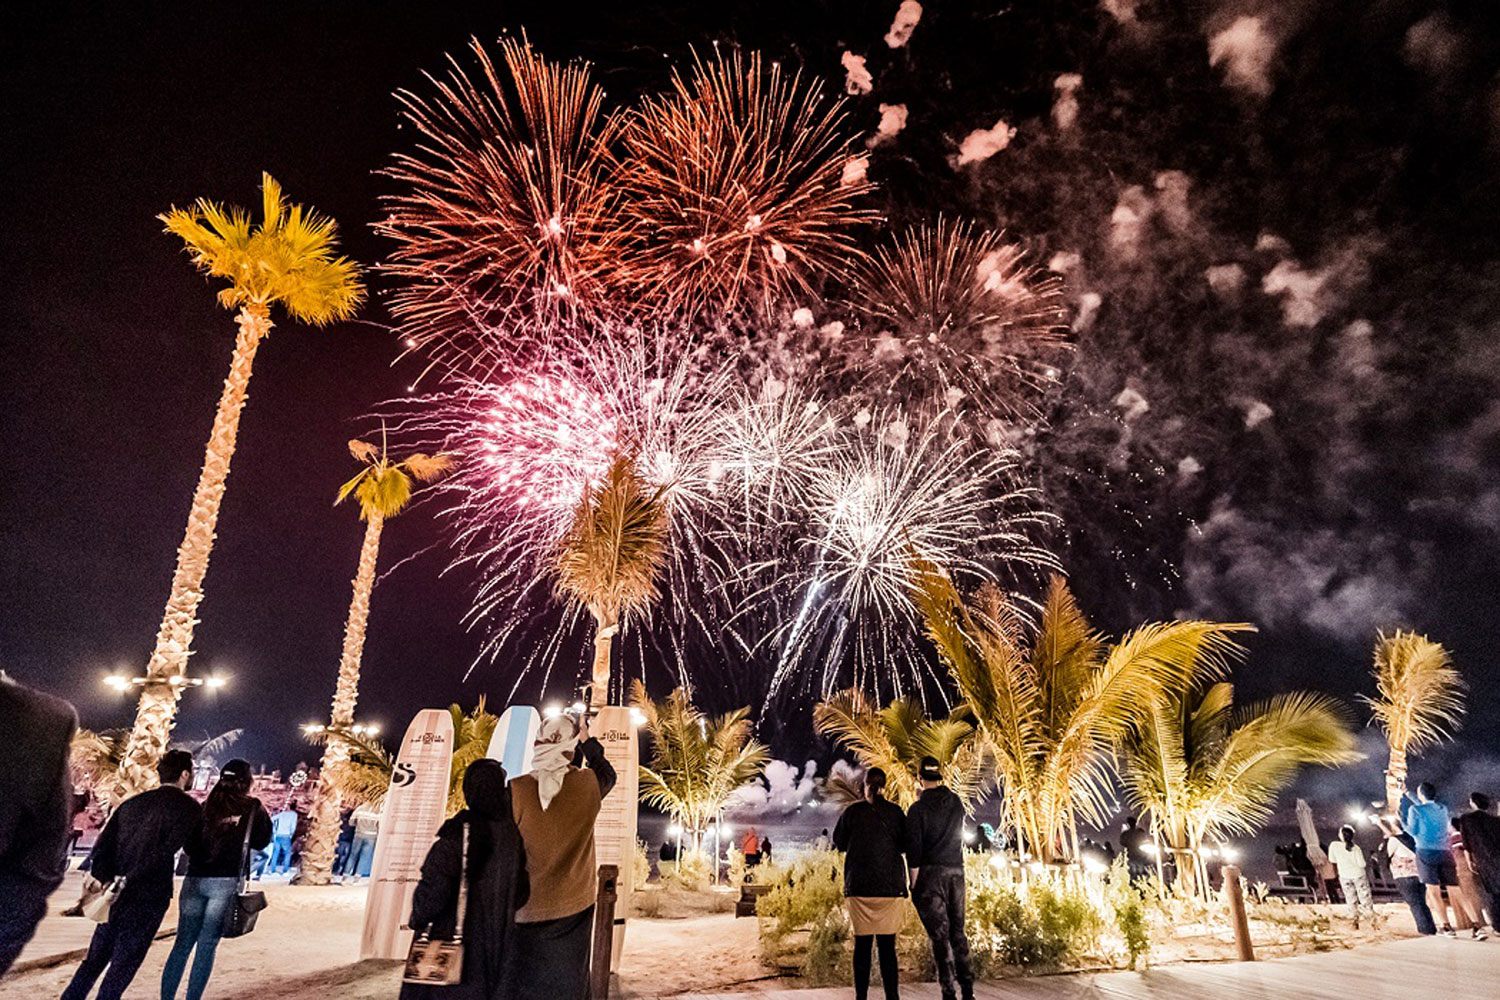 عروض الألعاب النارية ضمن مهرجان دبي للتسوق 2021